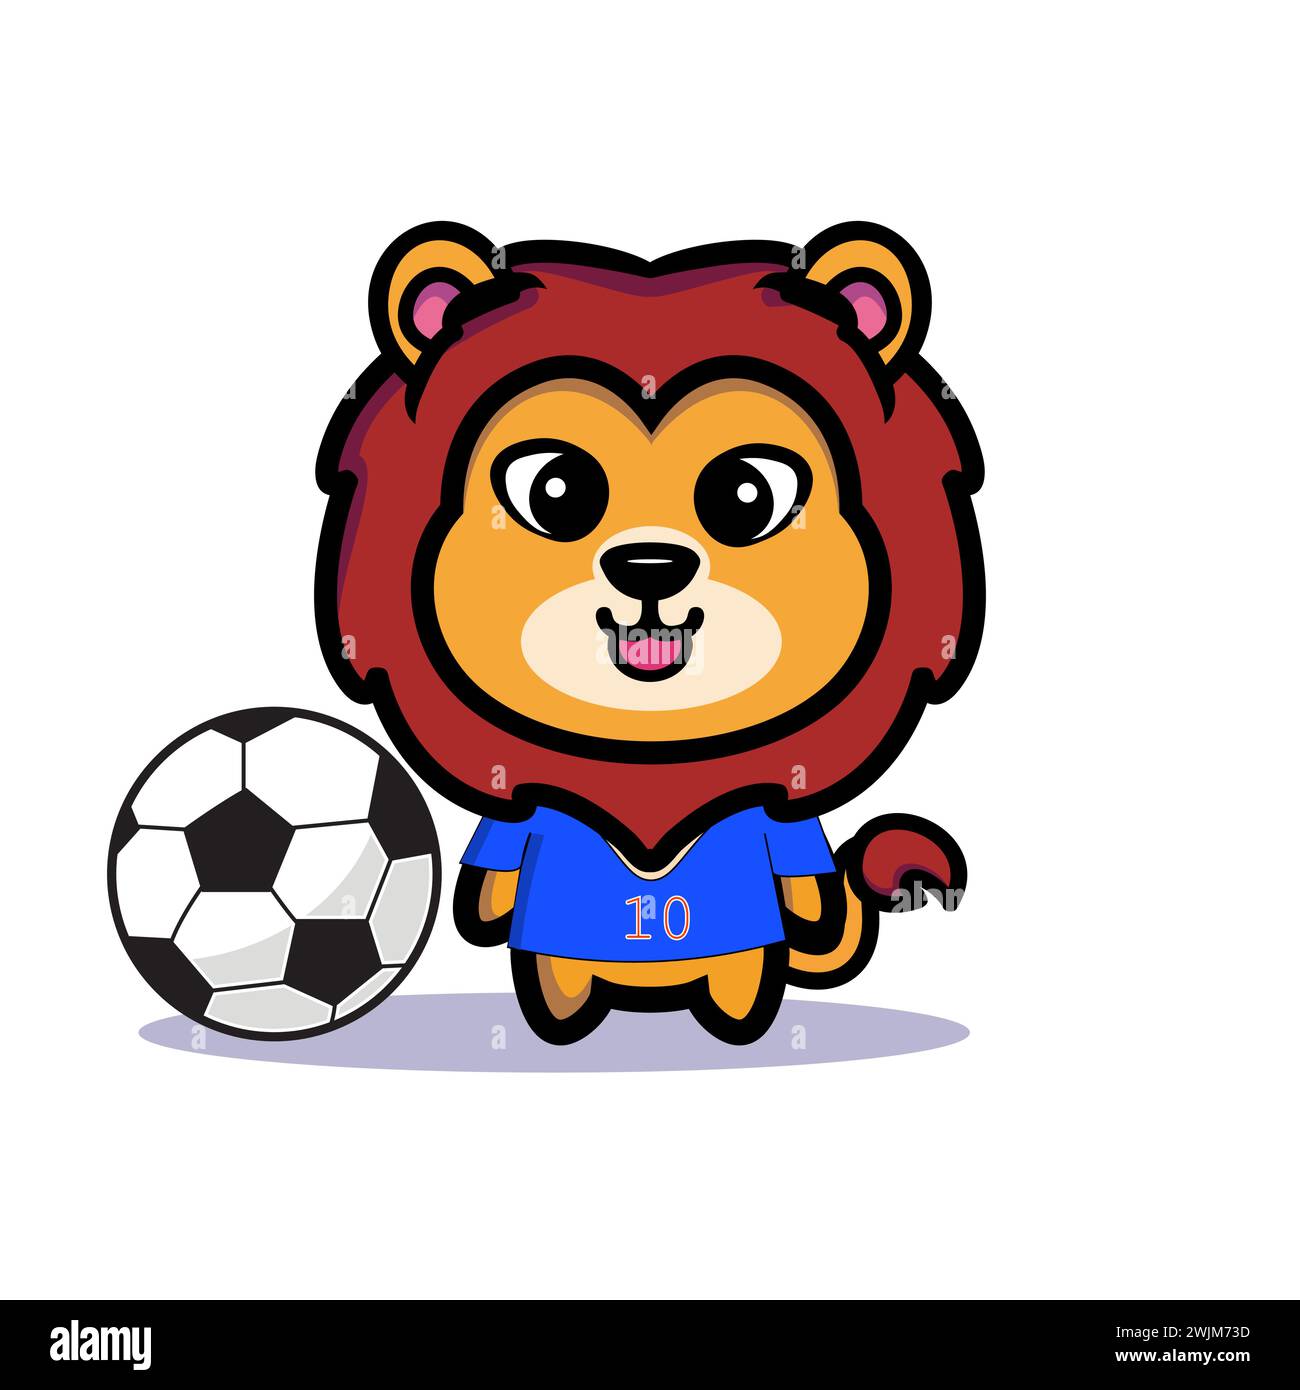 Symbole d'illustration d'art mascotte personnage animal design kawaii lion costume équipement de football Illustration de Vecteur